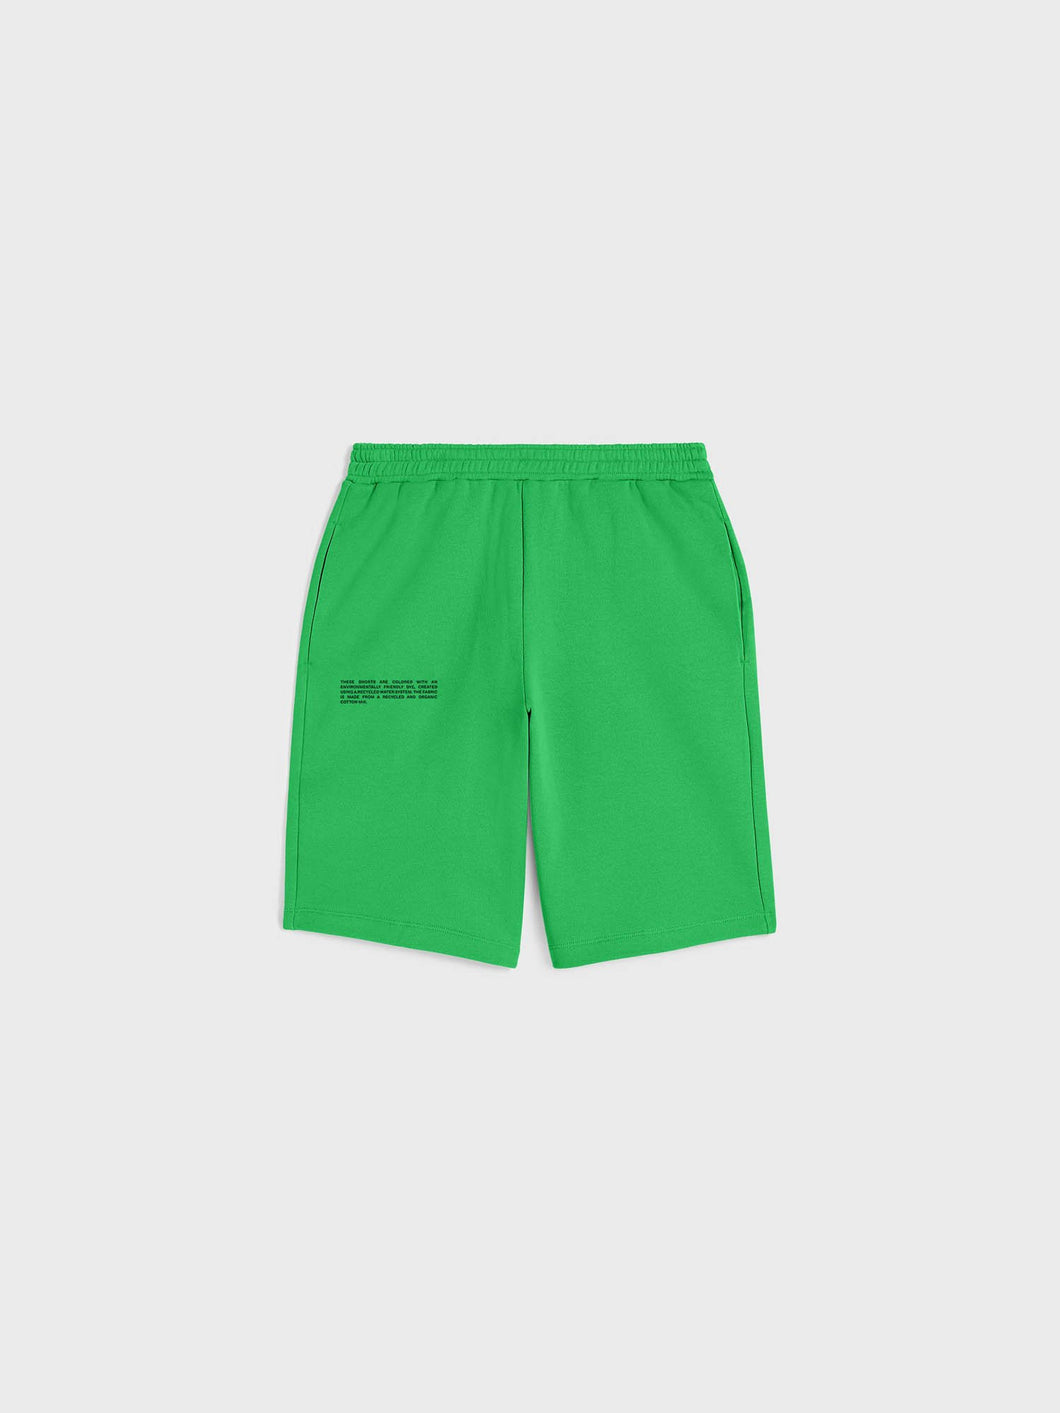 Jade Green Long Shorts